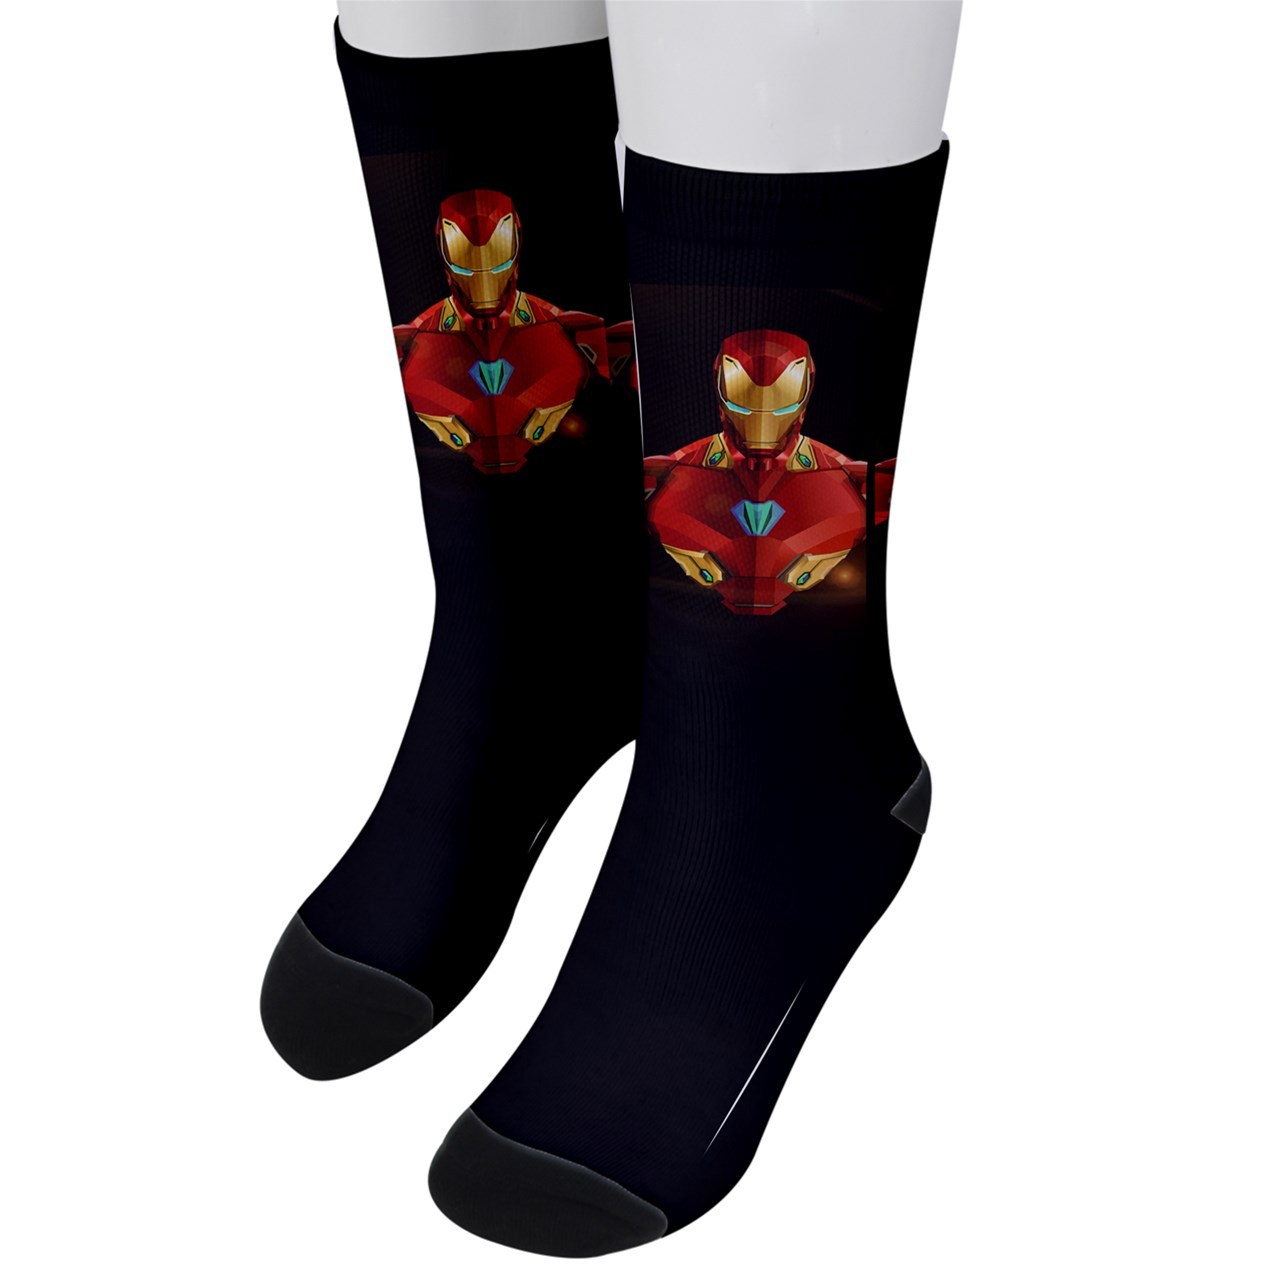 socks for ironman 1